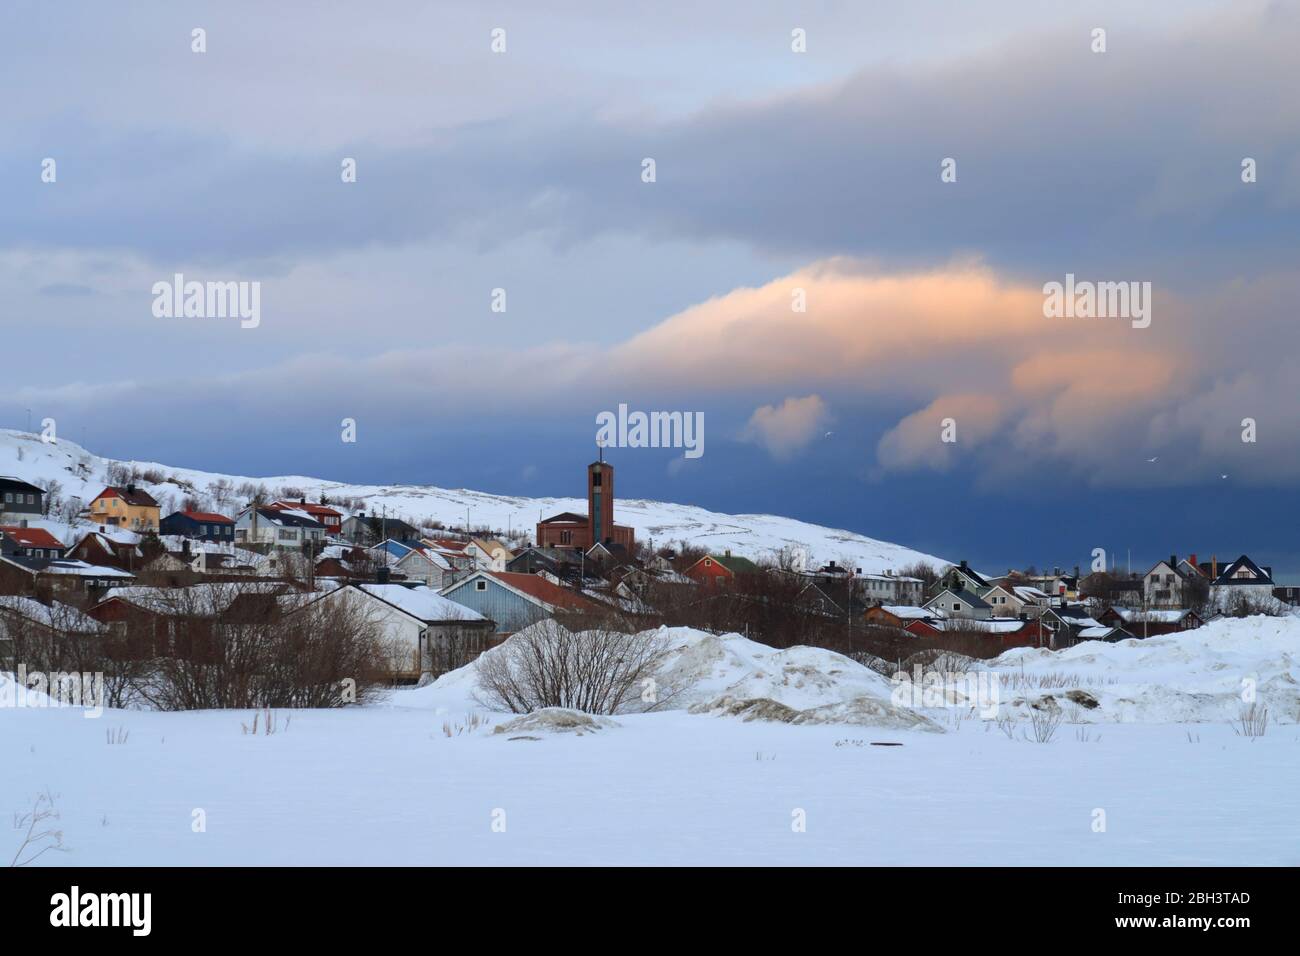 Das arktische norwegische Fischerdorf Båtsfjord auf der Varanger-Halbinsel sah im späten Winter, als sich ein Schneesturm nähert Stockfoto